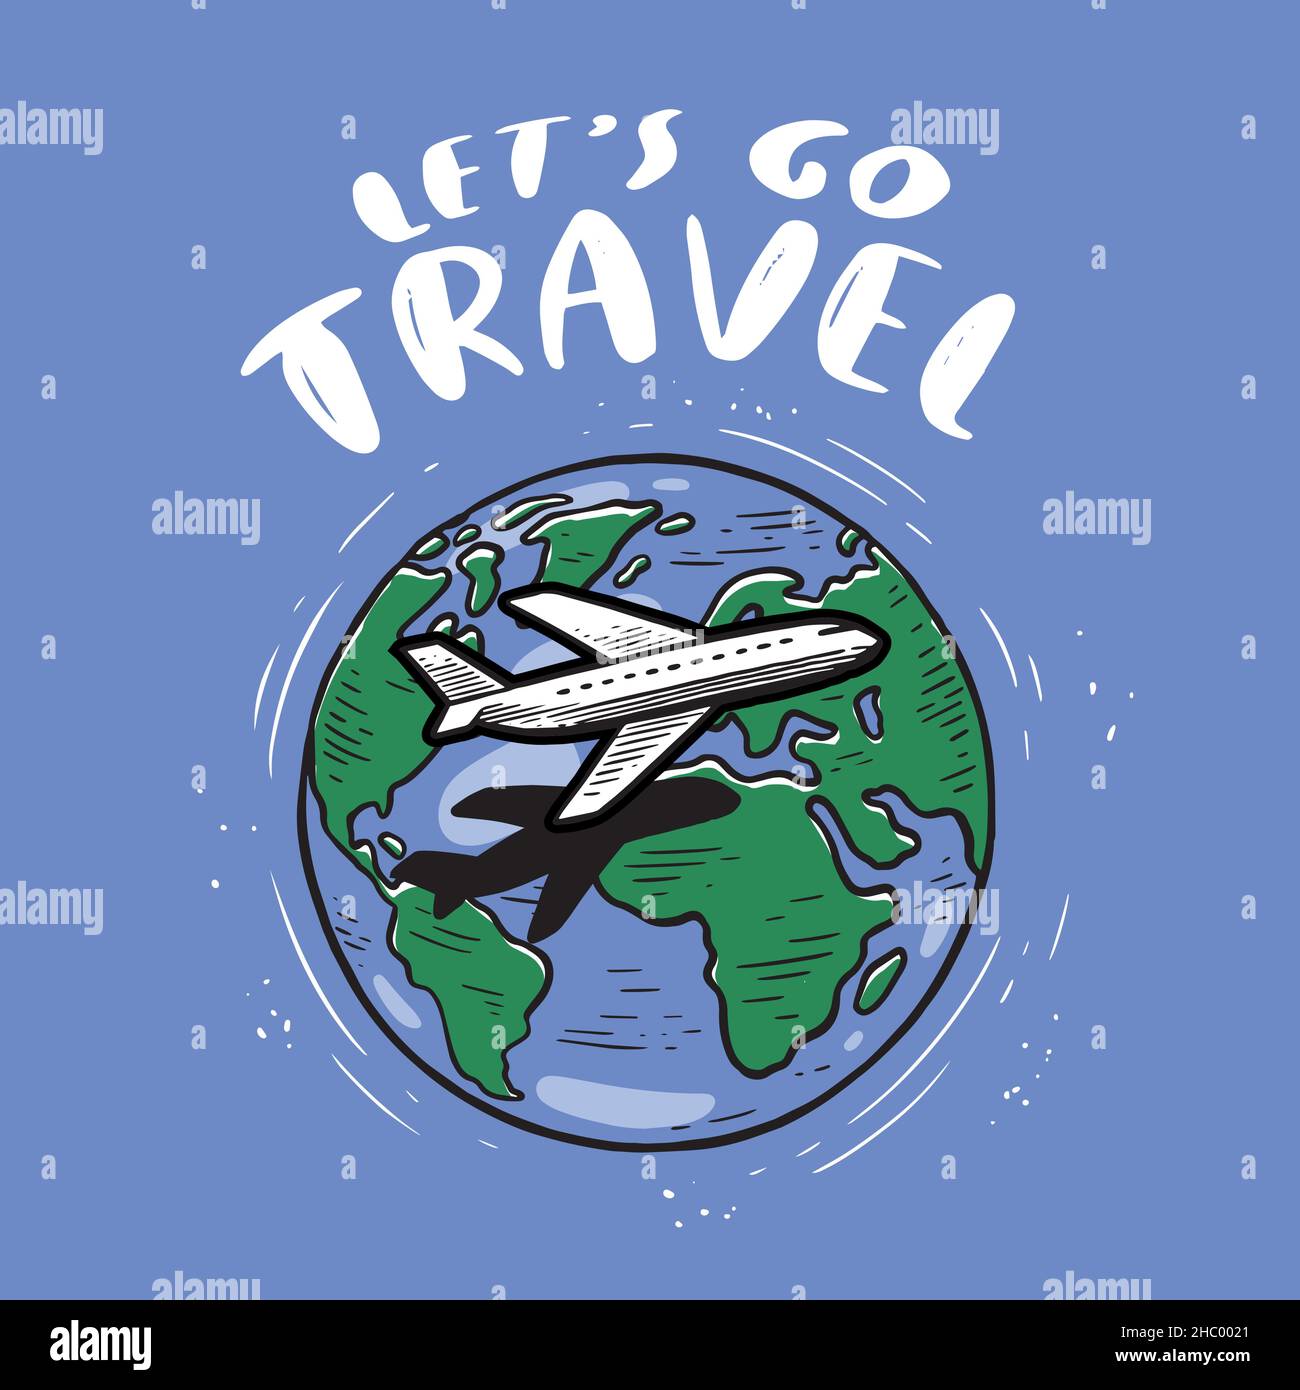 Aeroplano sullo sfondo della mappa del mondo. Concetto di viaggio o turismo. Illustrazione vettoriale delle lettere di ispirazione Illustrazione Vettoriale